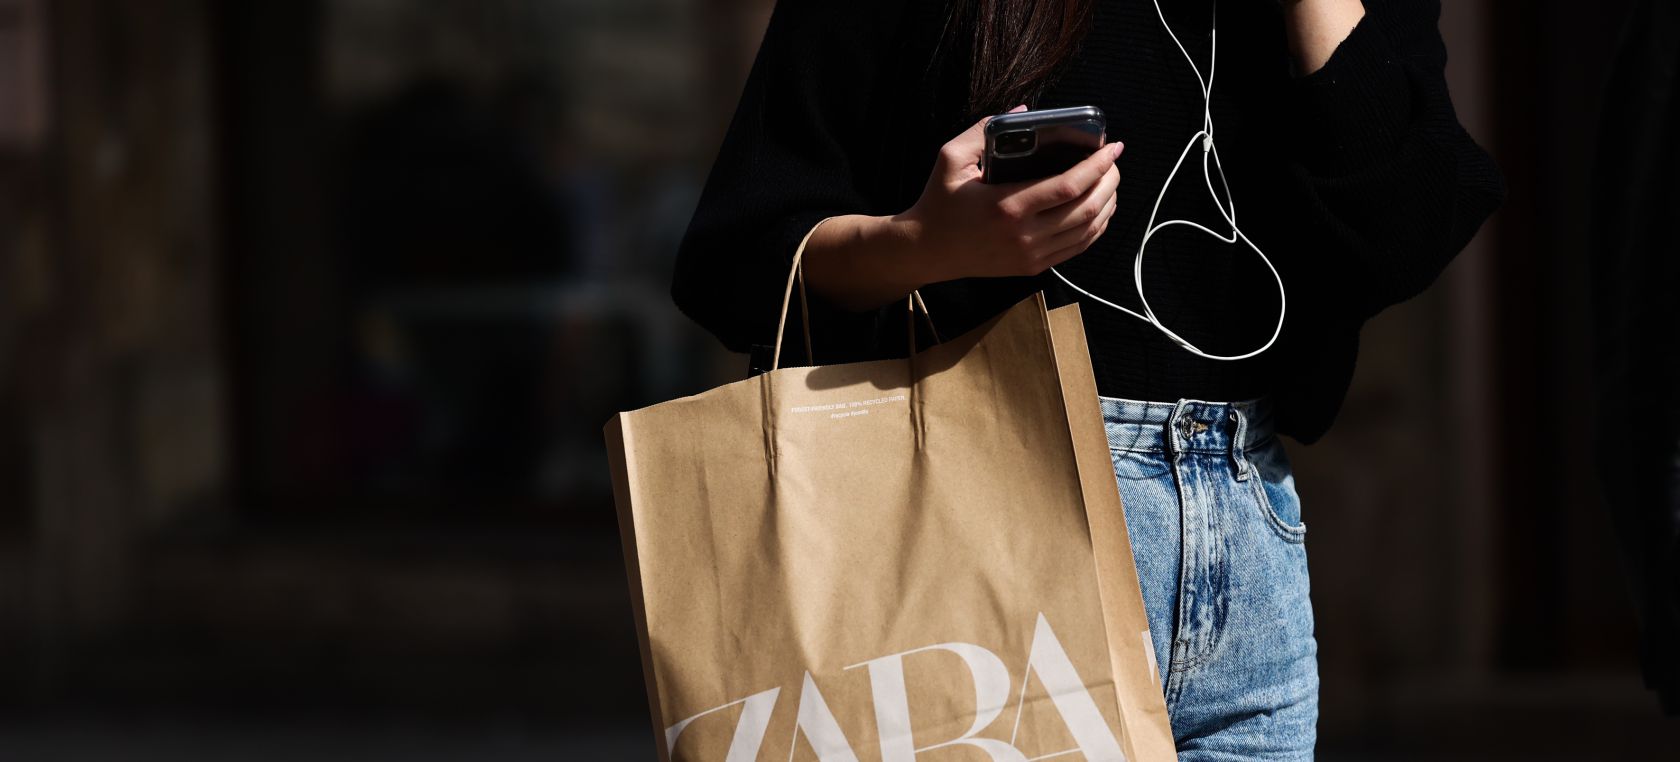 El producto que Zara a su colección que no tiene nada que ver la ropa | Moda y Belleza | LOS40